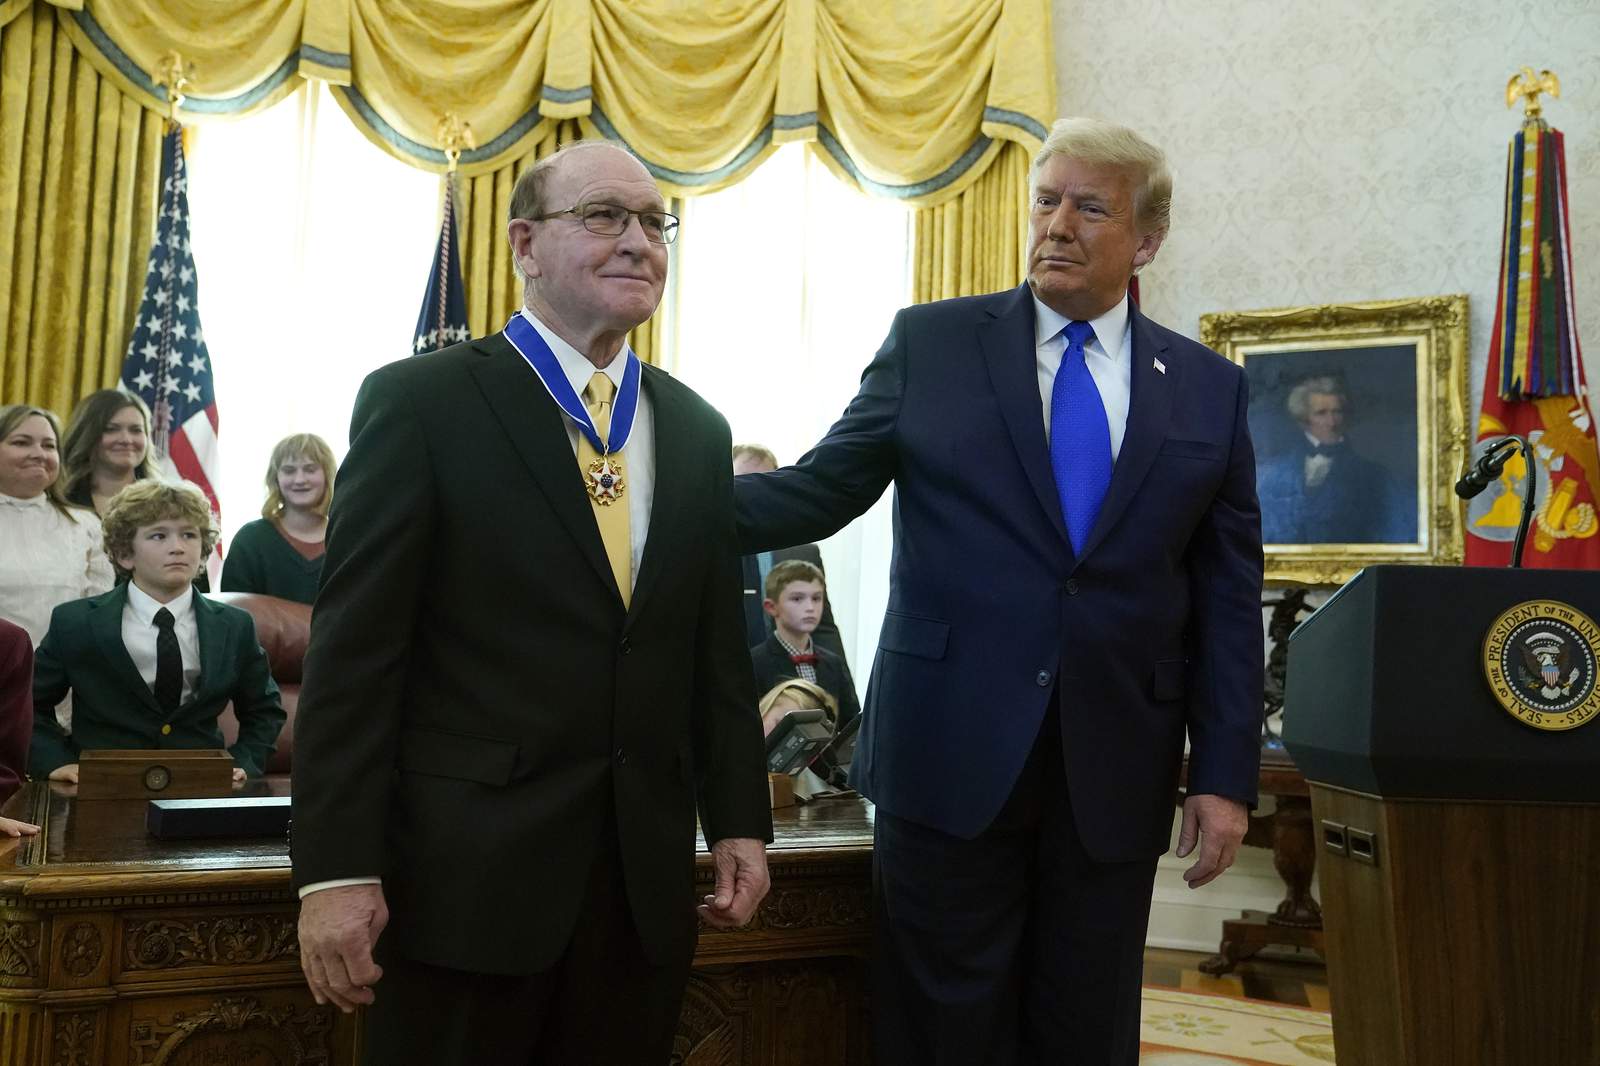 Trump honors legendary Iowa wrestler Gable at White House